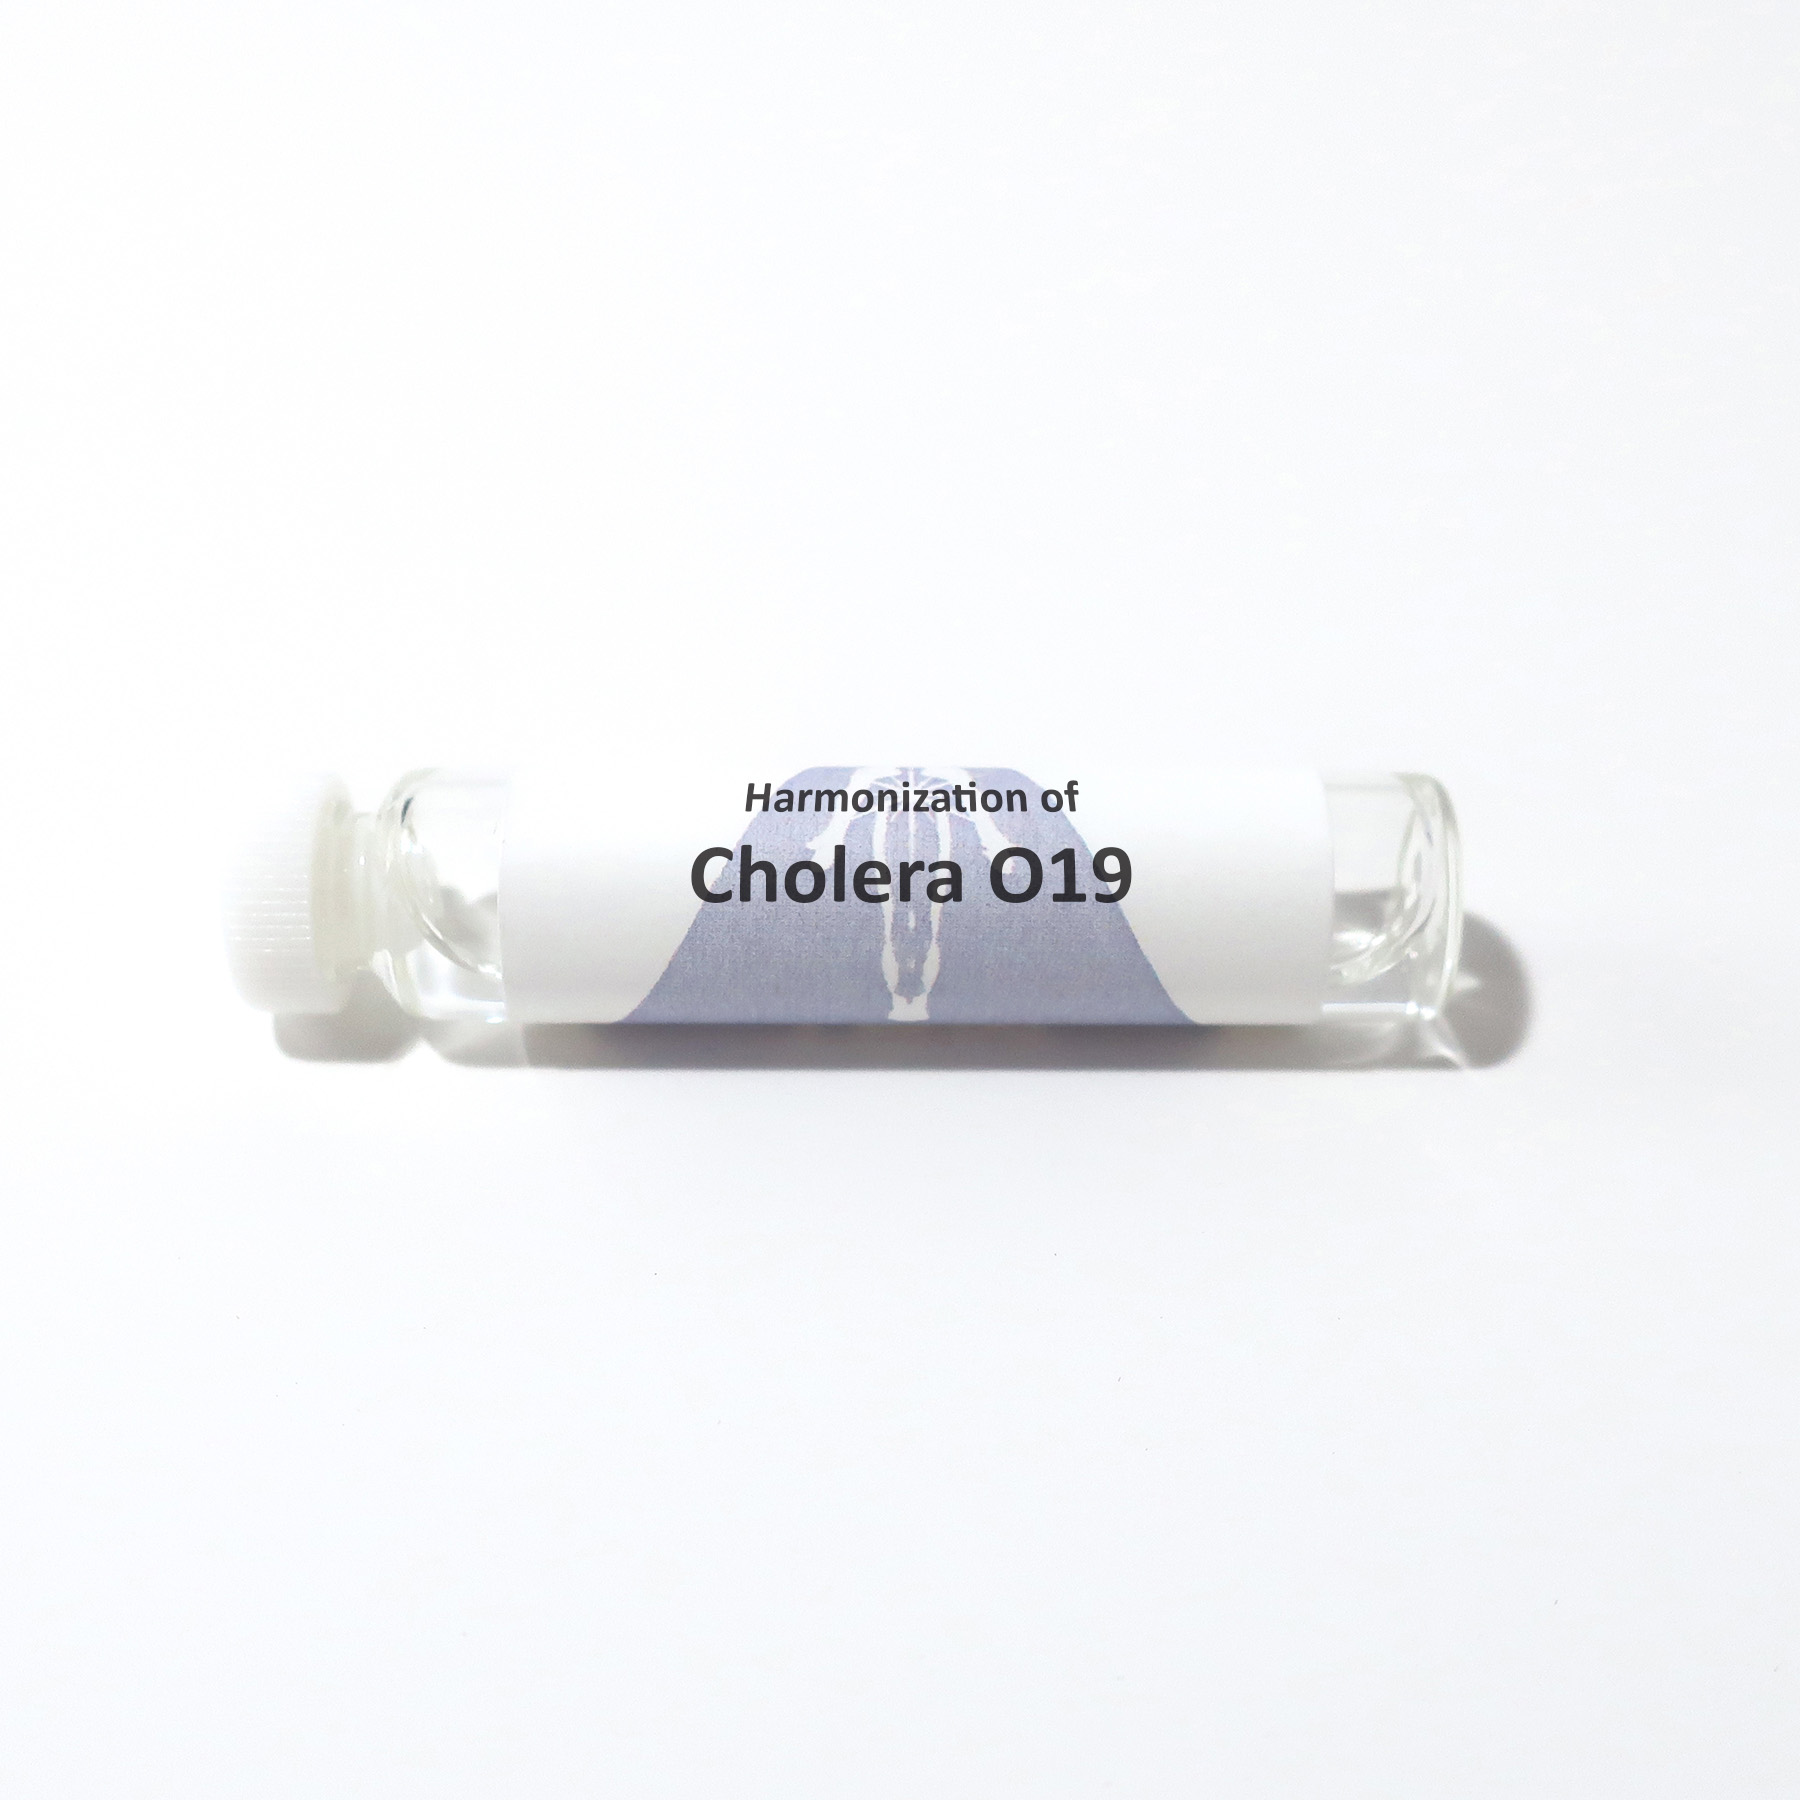 Cholera O19